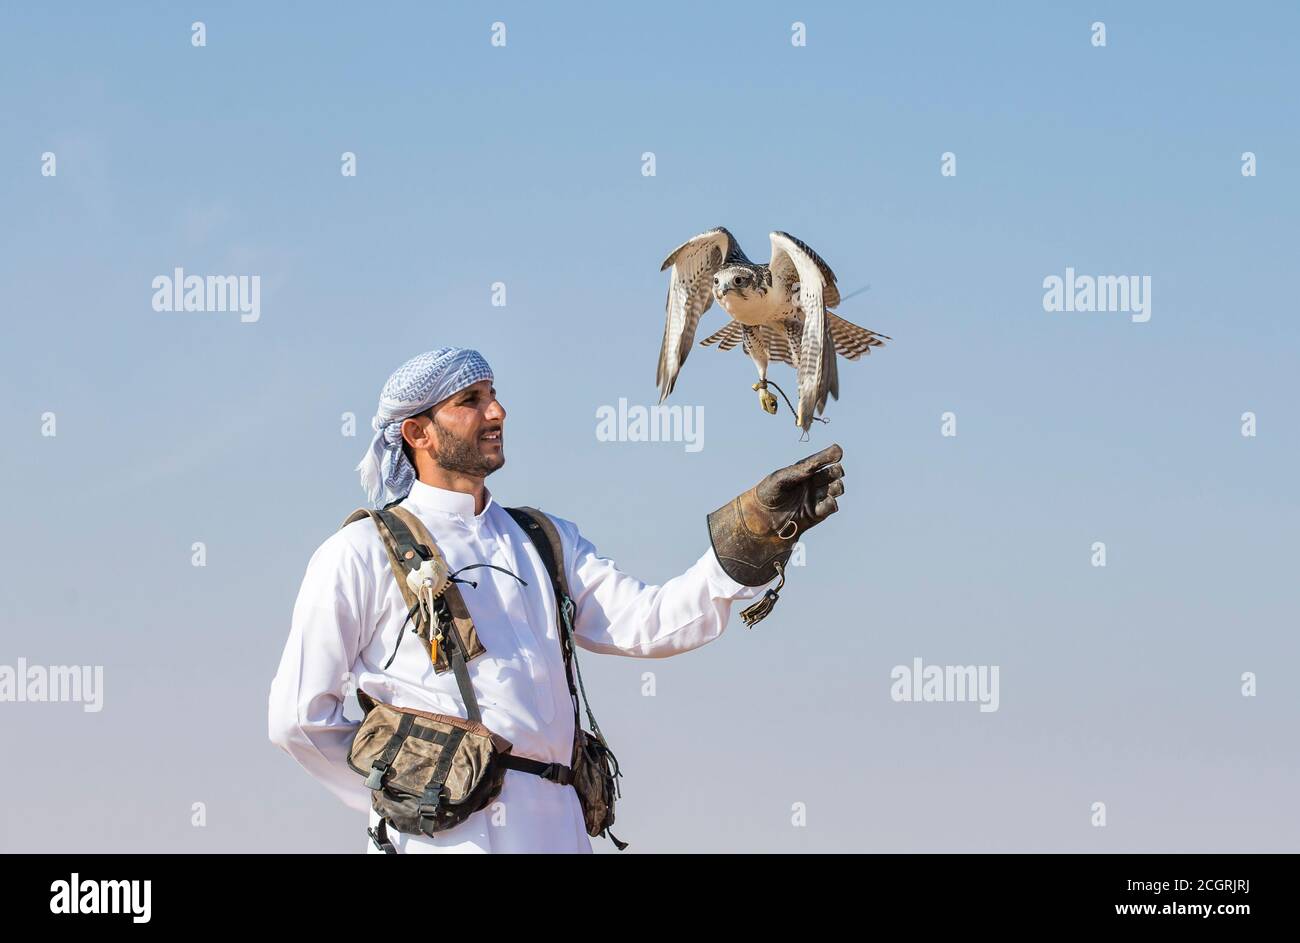 Dubai, Vereinigte Arabische Emirate, 19. November 2016: Ein Falkner in traditioneller Kleidung, Ausbildung ein Wanderfalke (Falco Peregrinus) Stockfoto